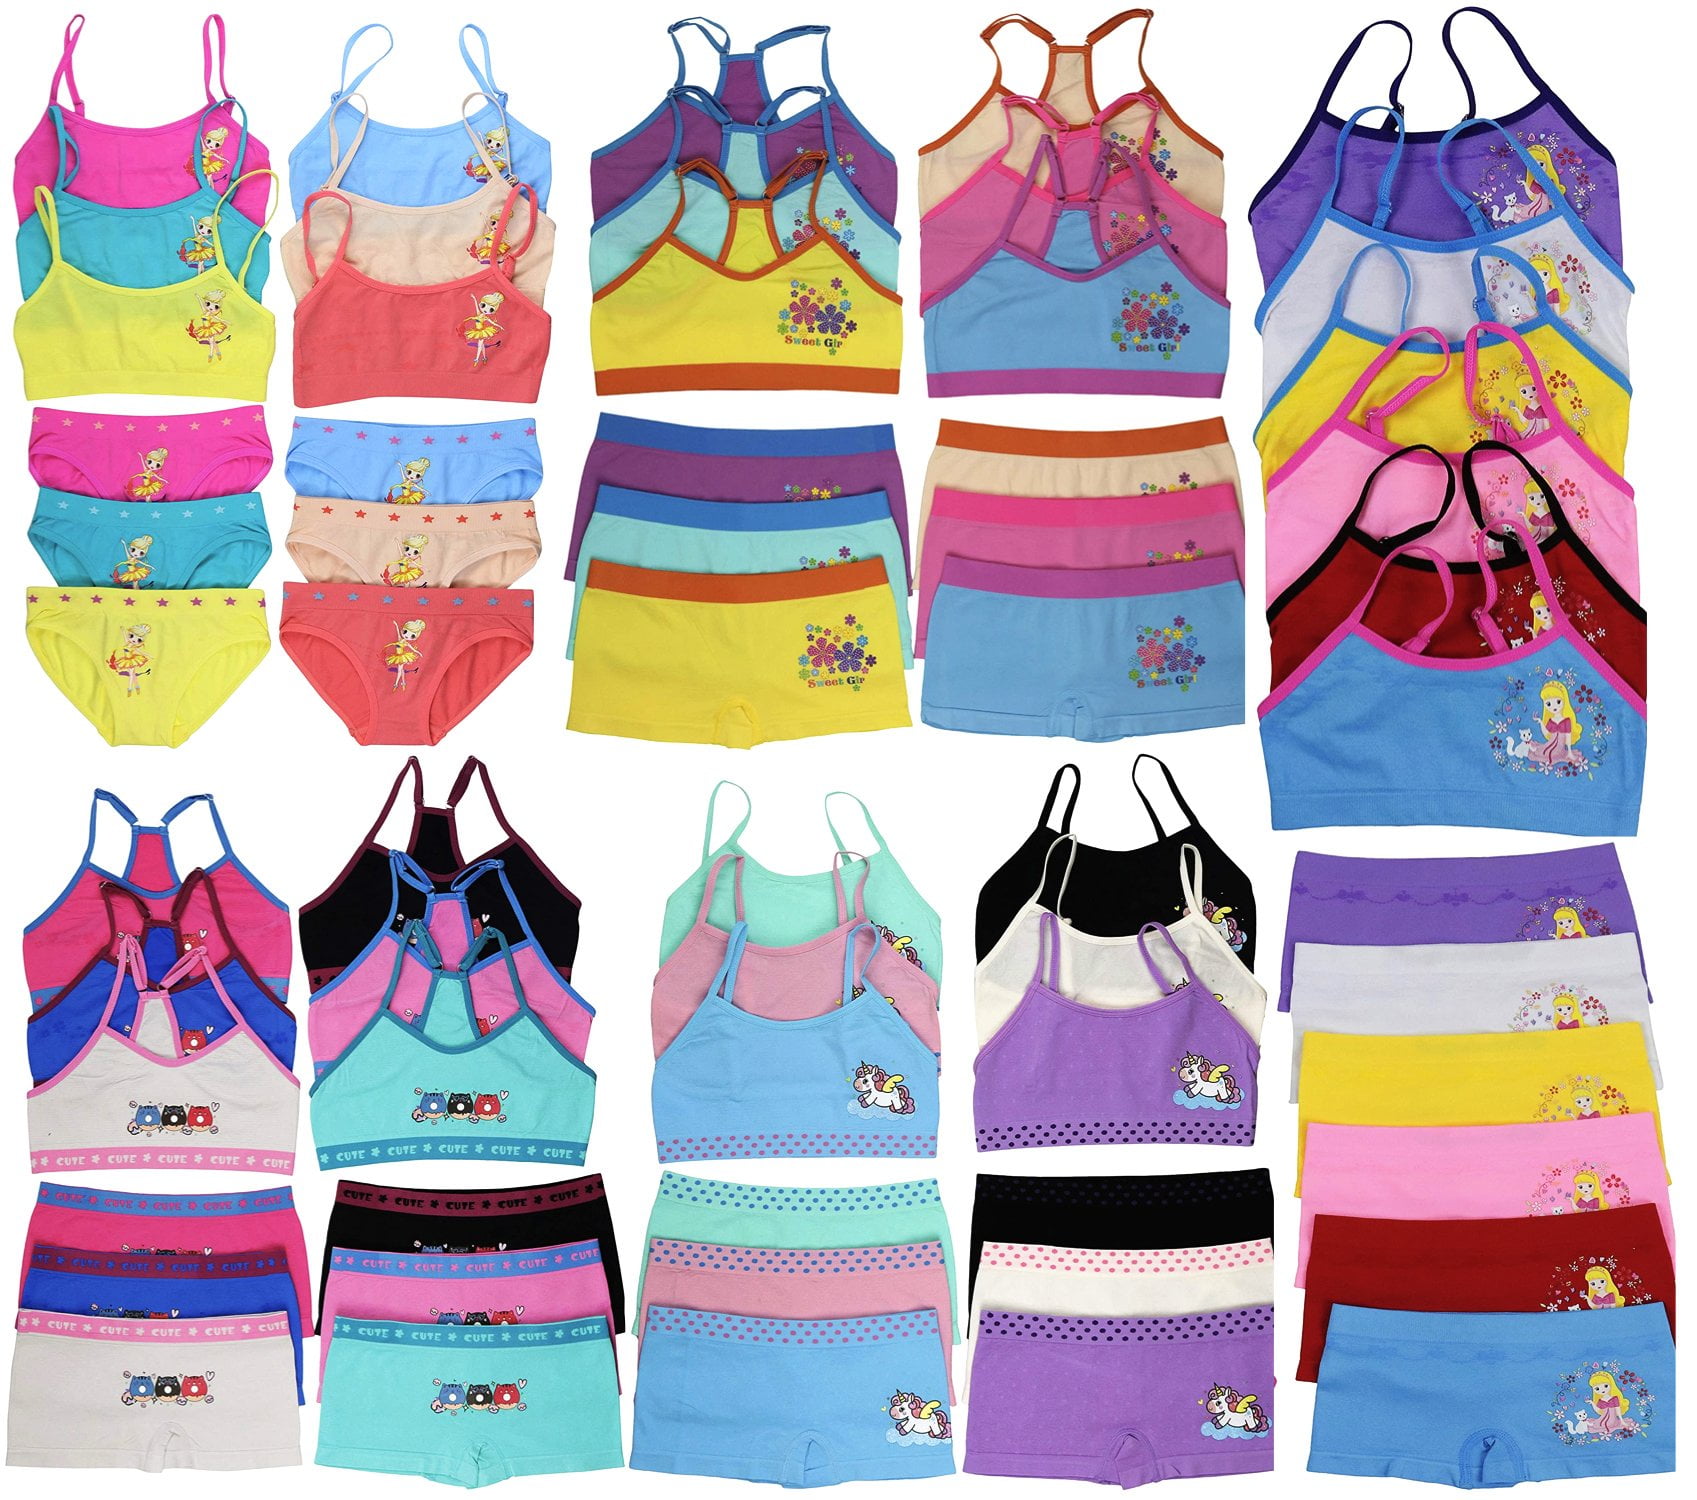 Wonder Nation Toddler Girls' Cami Undershirts, 12-Pack